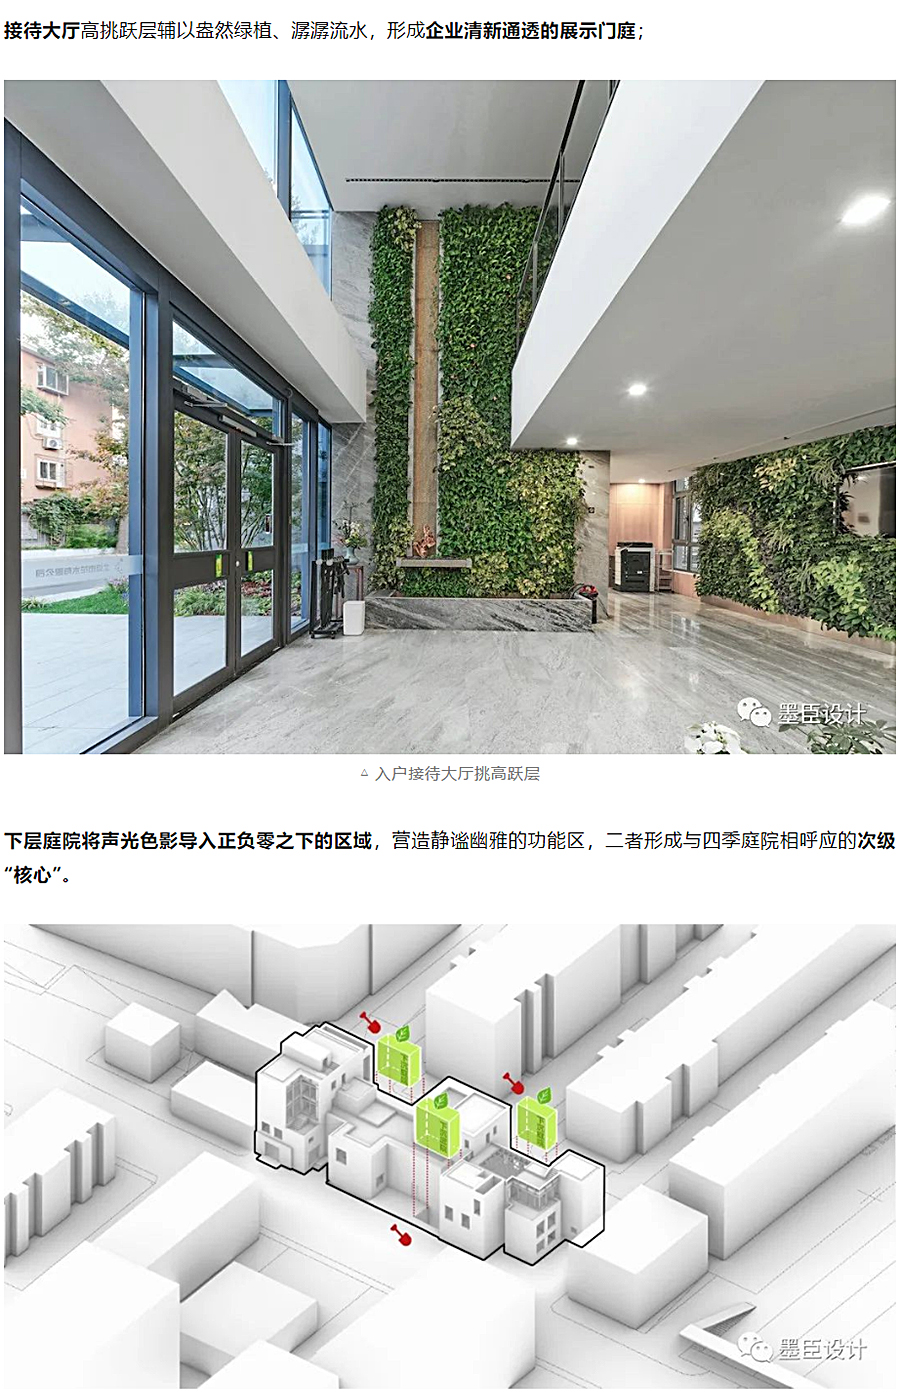 生态办公的游园序列-_-北京花木公司办公楼改造_0016_图层-17.jpg